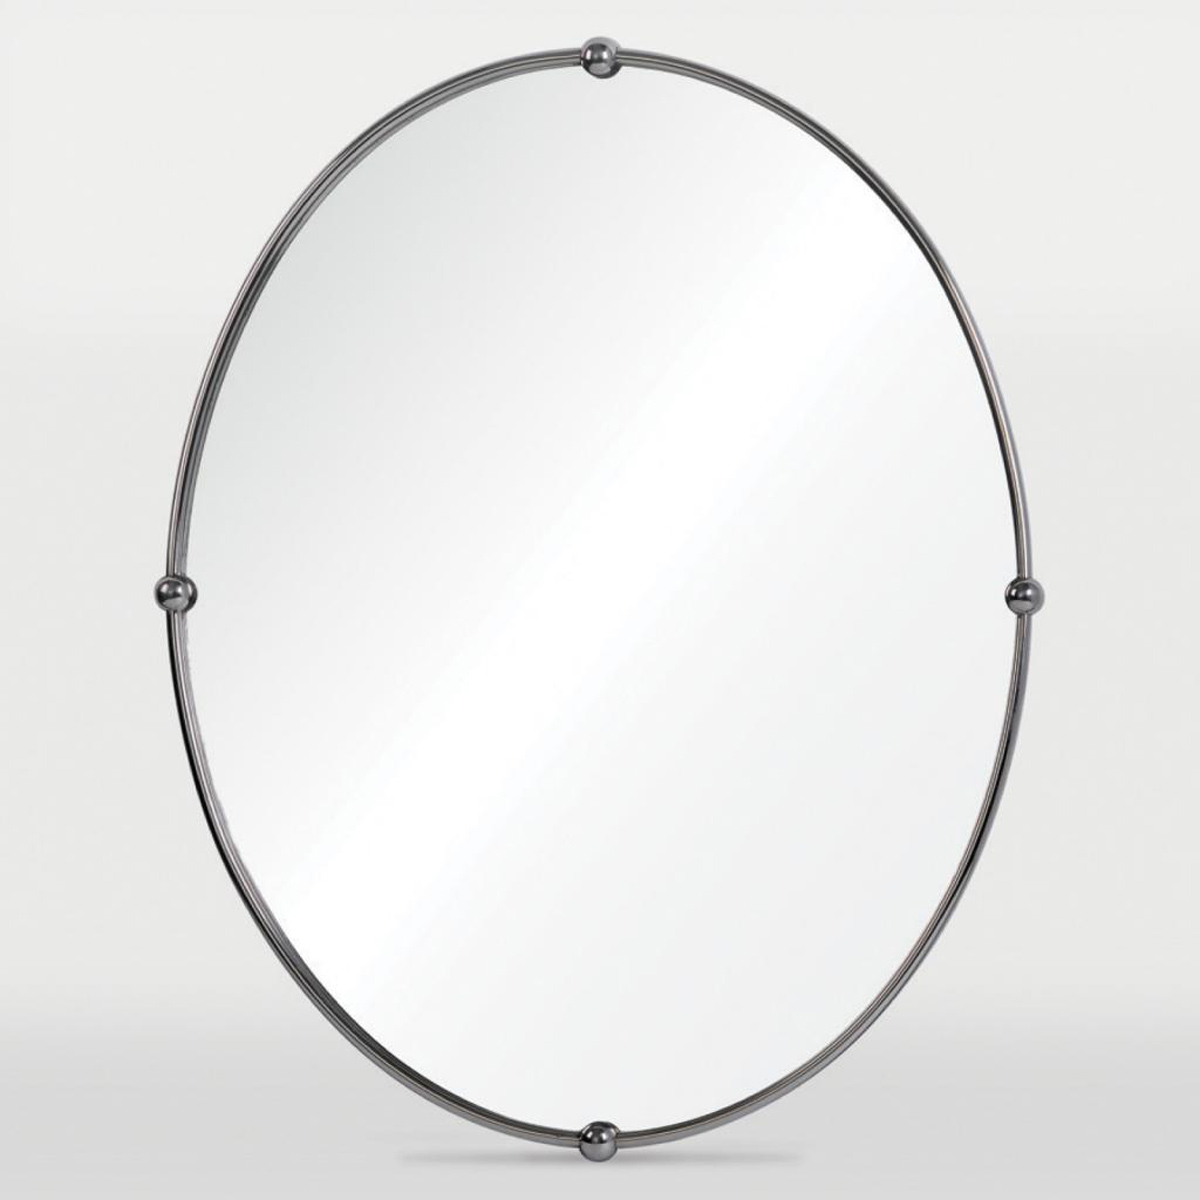 Ren-Wil Marco Polo Mirror - Chrome